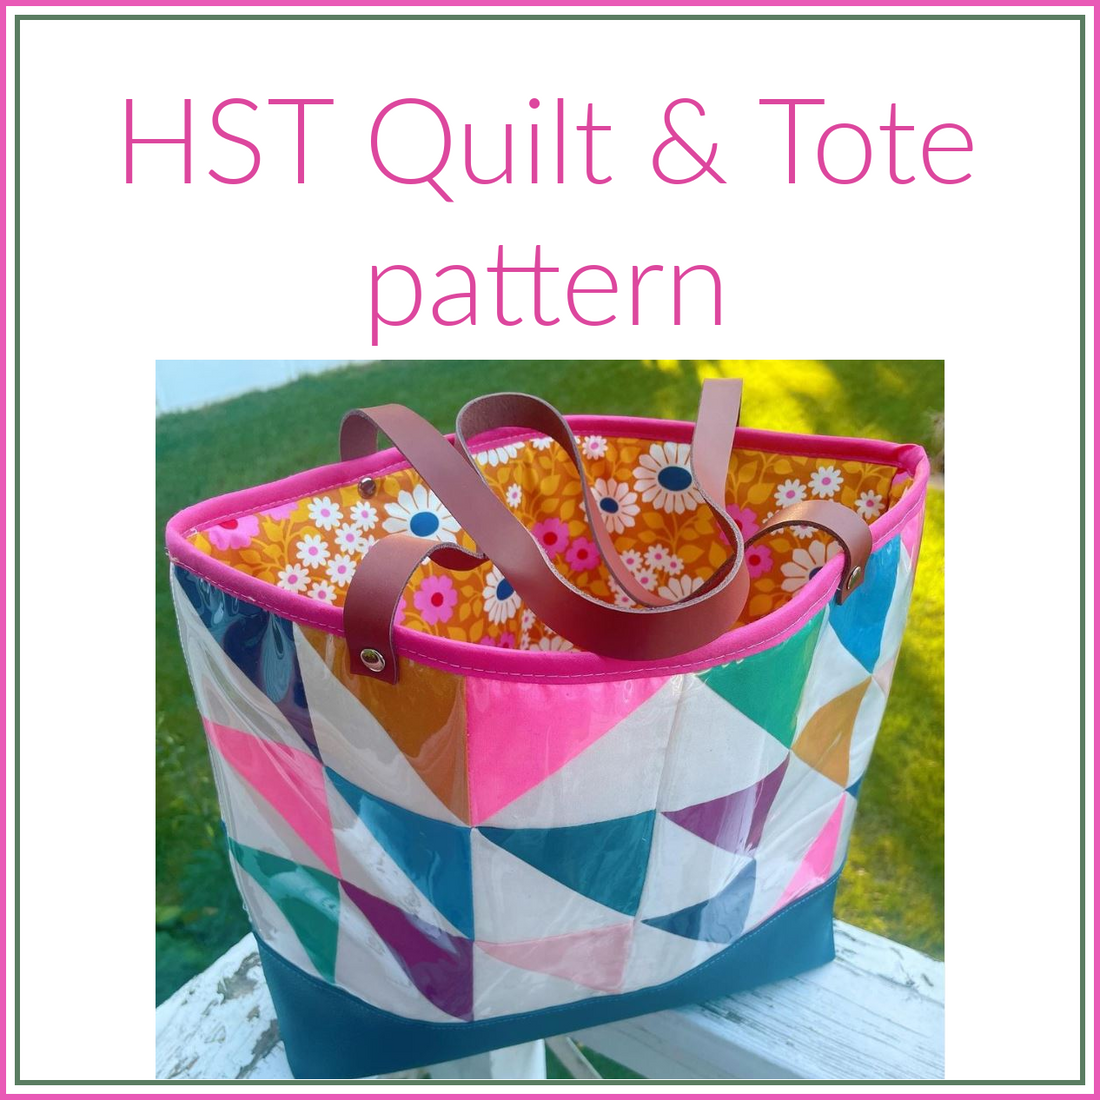 HST Quilt & Tote pattern